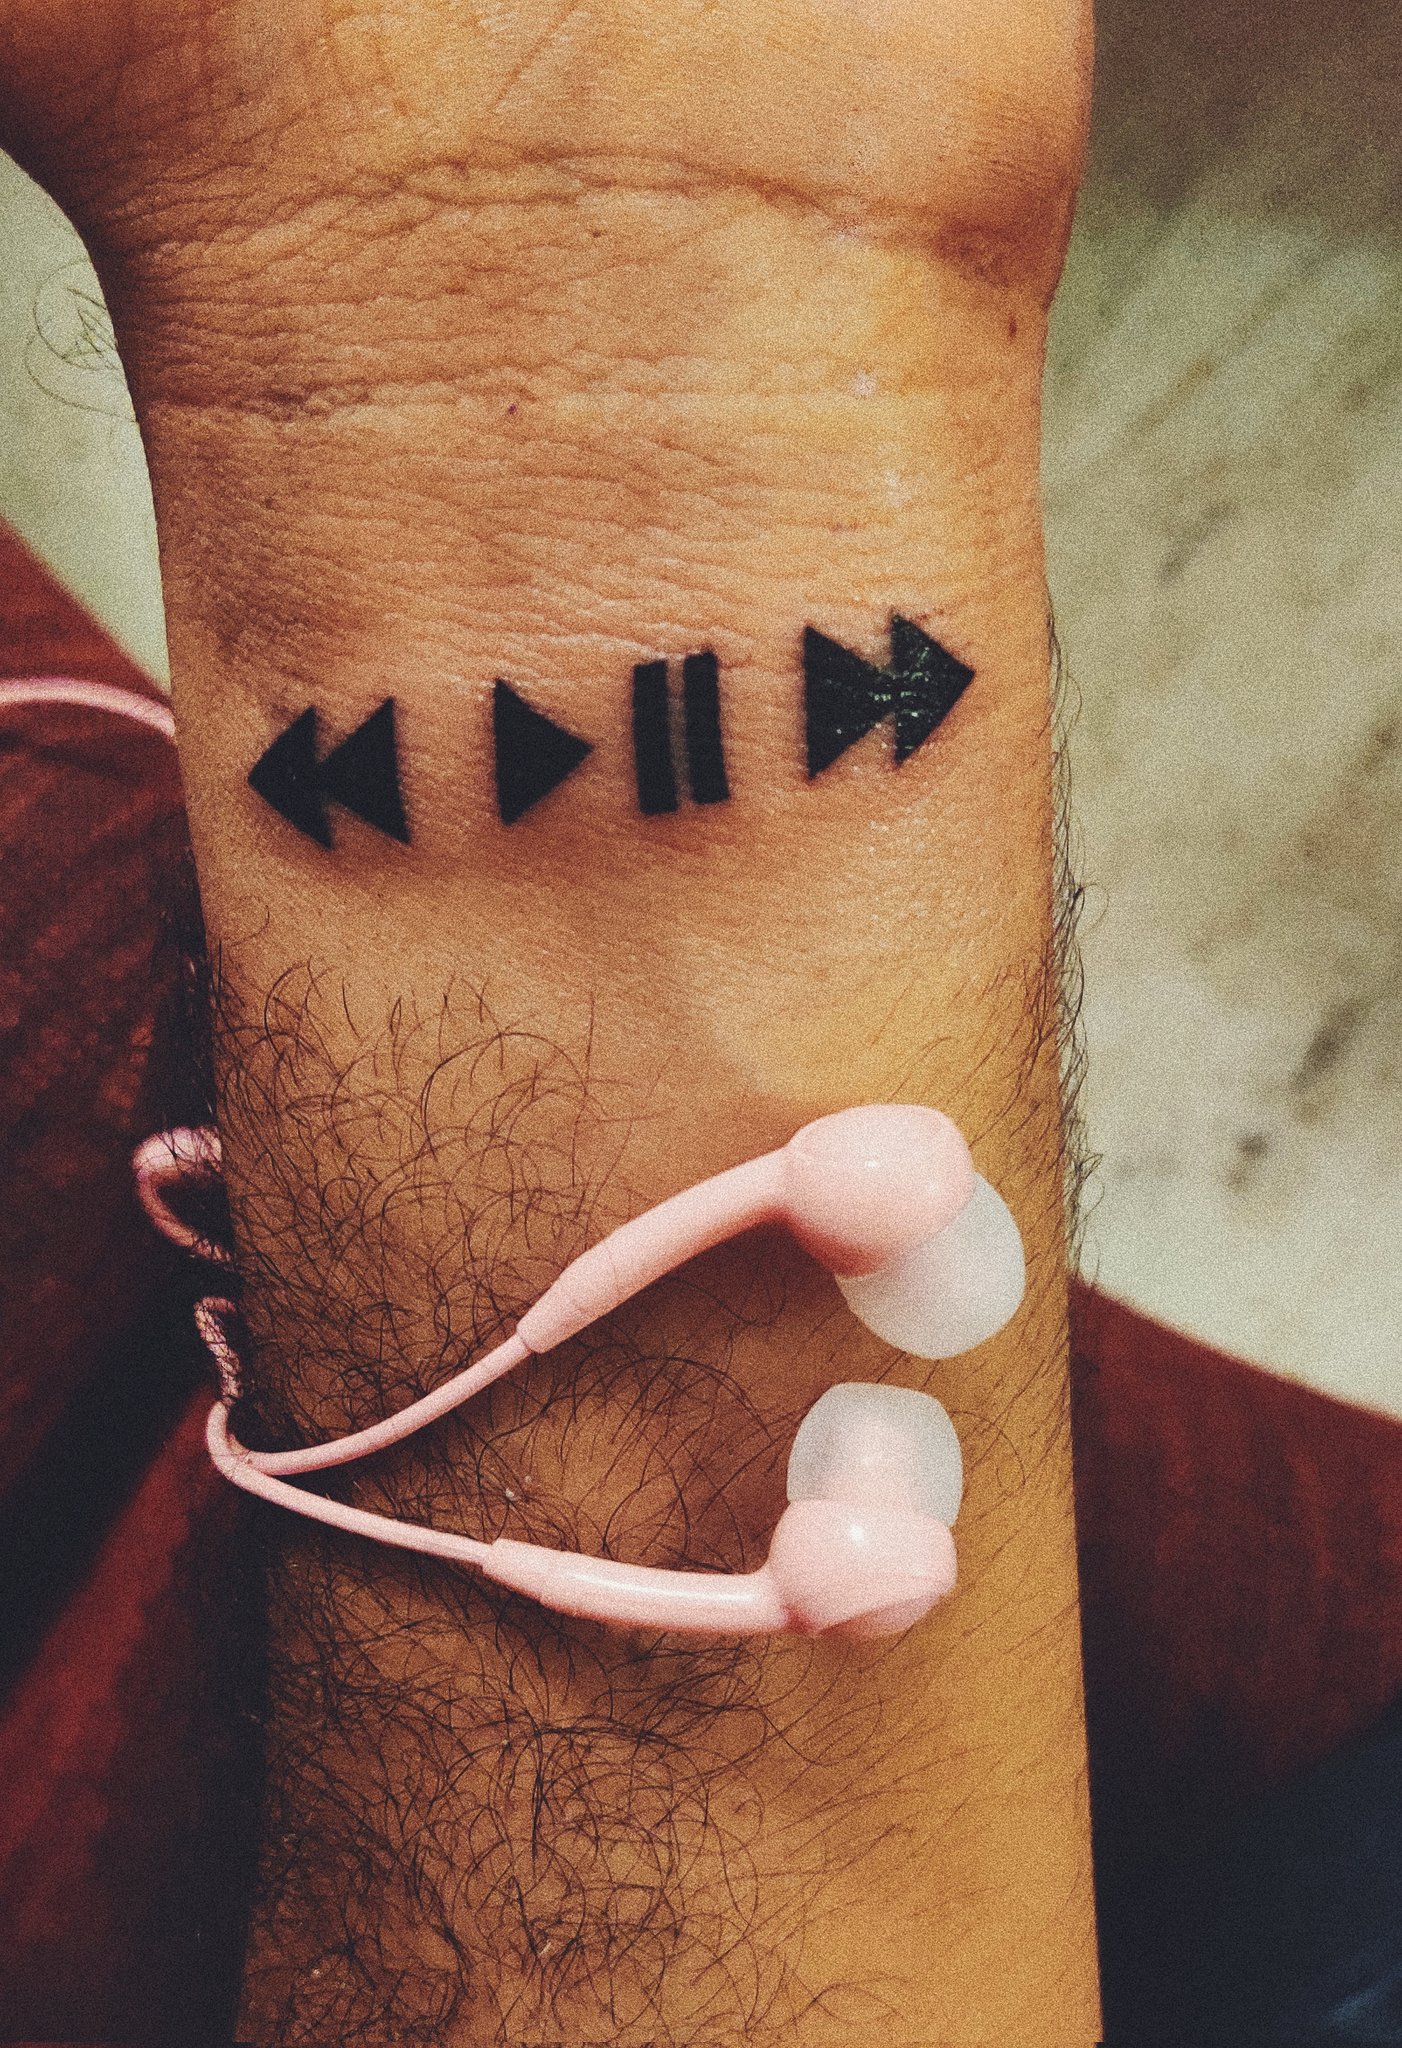 Rewind pause play forward repeat | Behind ear tattoo, Ear tattoo, Tattoos